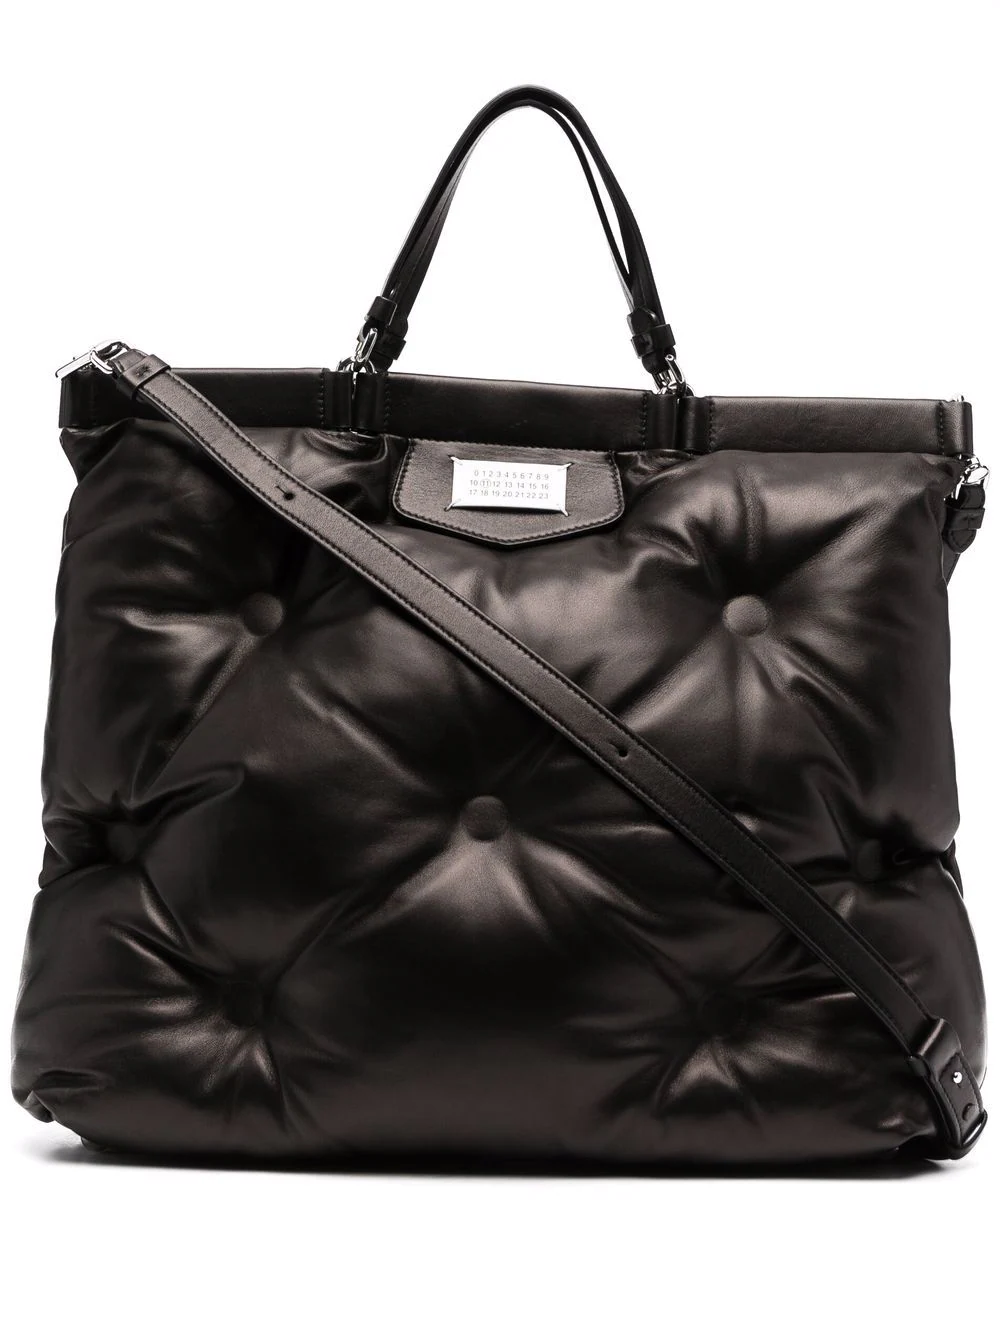 Glam slam leather handbag Maison Martin Margiela Grey in Leather